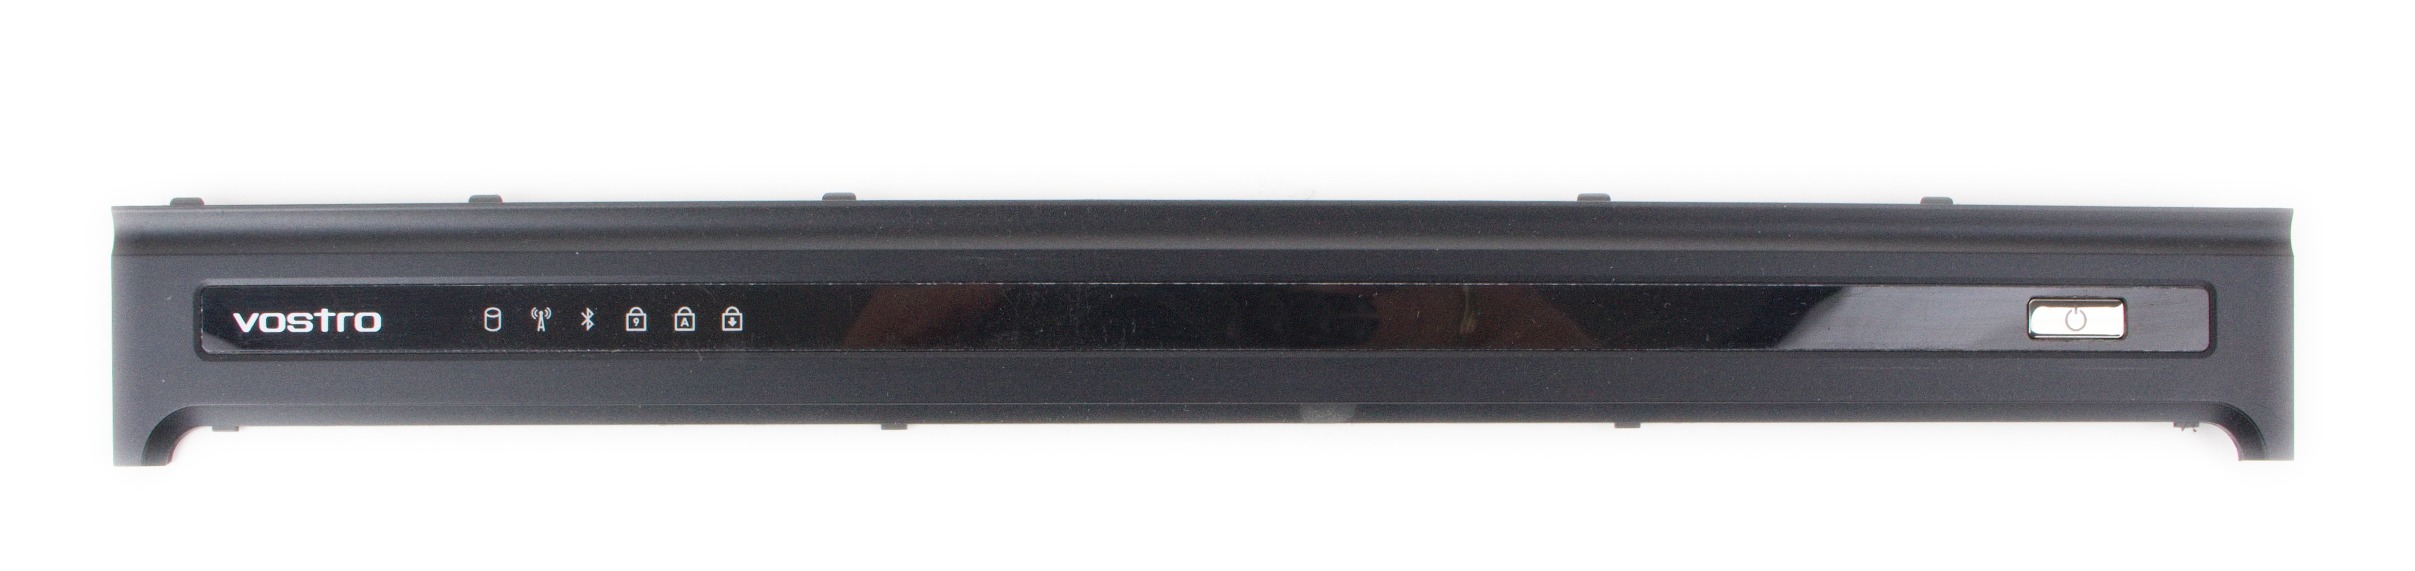 Horní lišta s tlačítky Dell Vostro V13